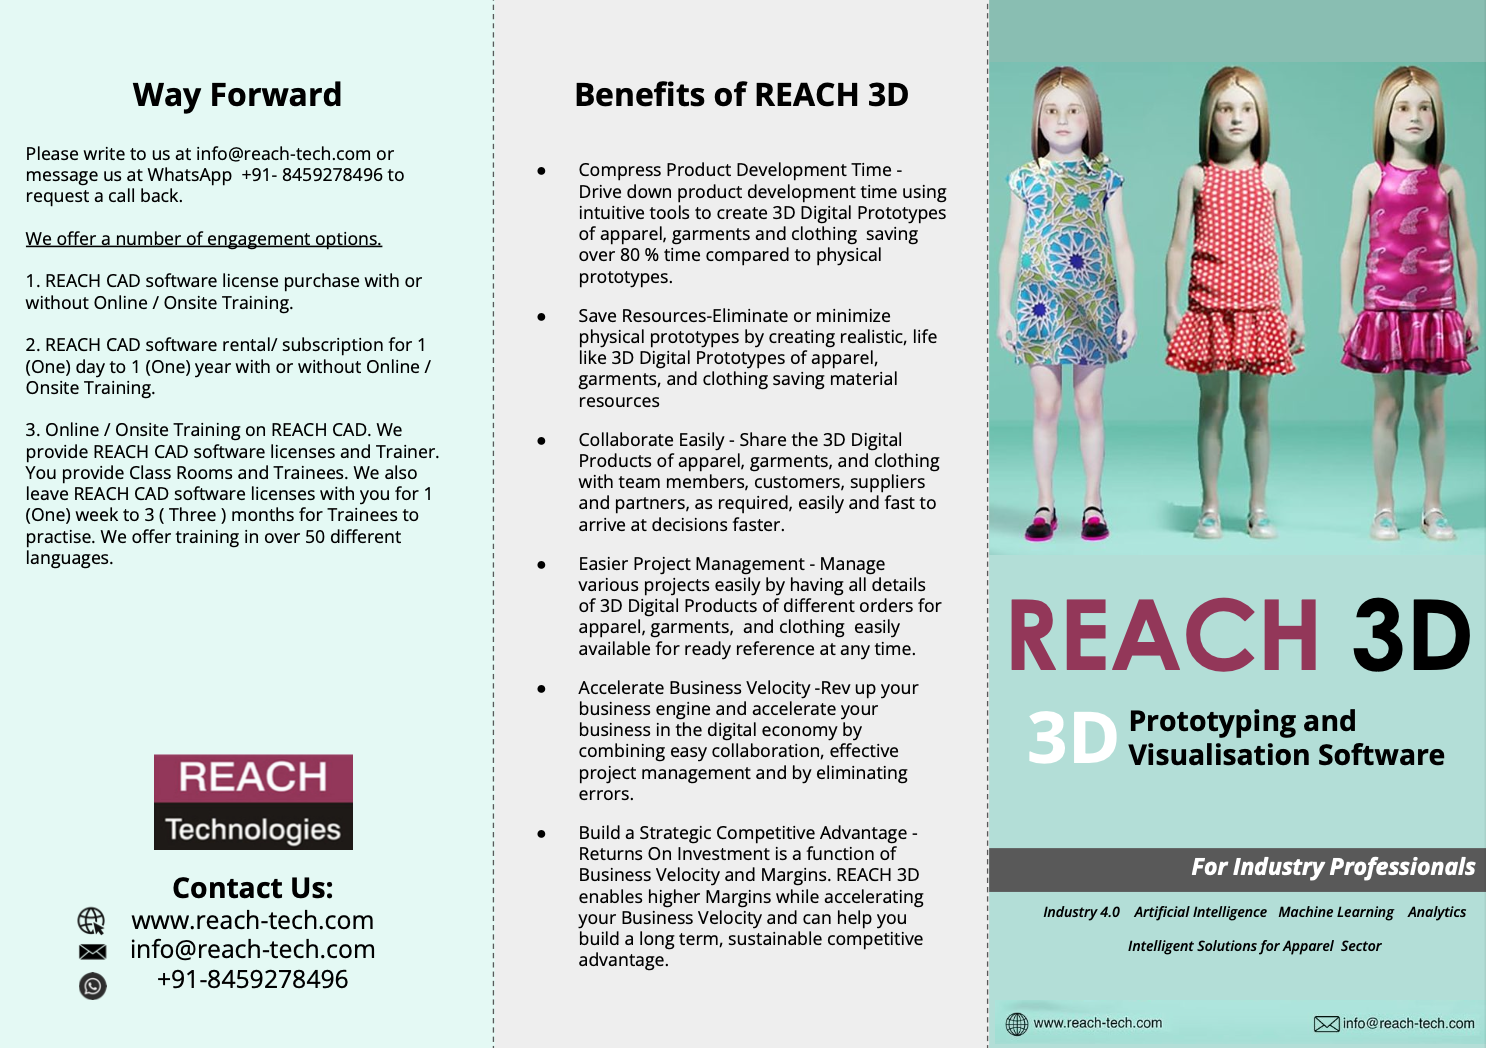 REACH 3D Professionals Brochure Image